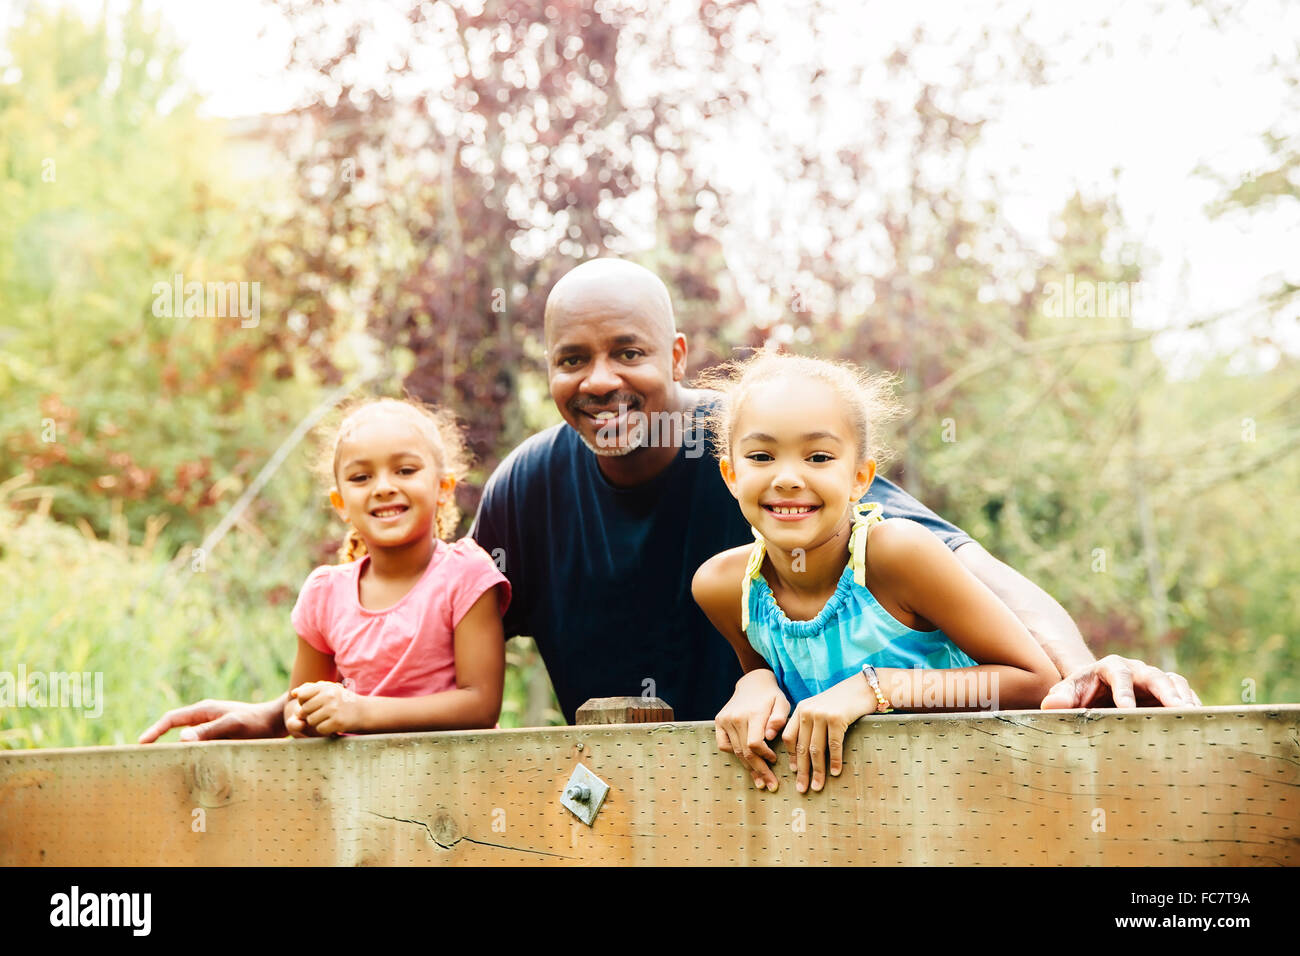 Père et filles smiling outdoors Banque D'Images